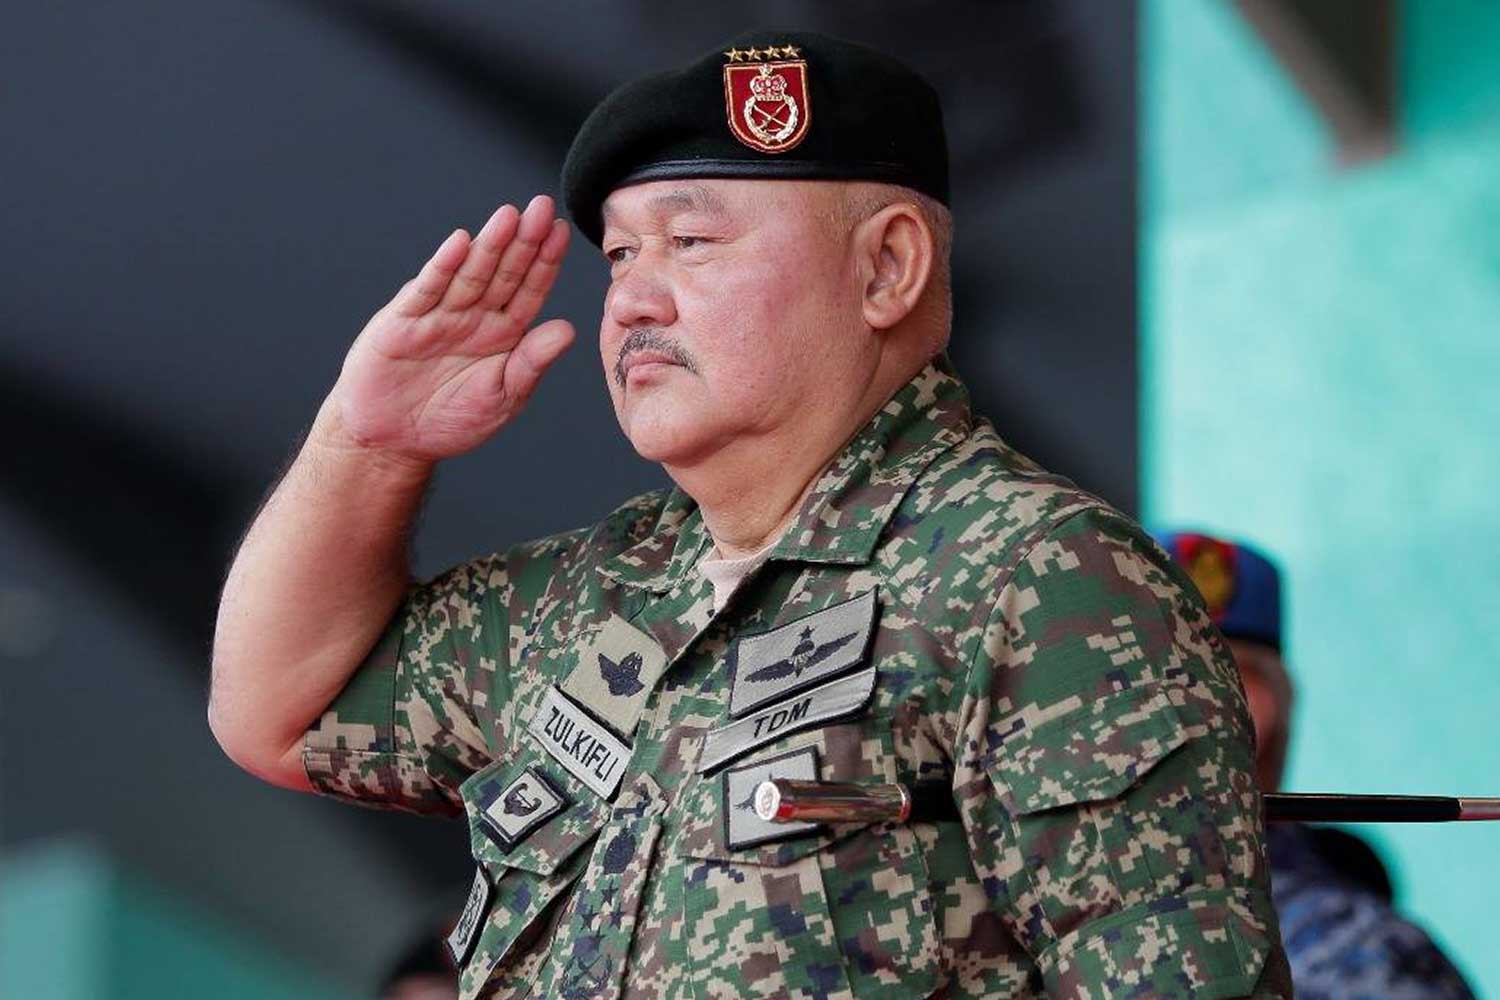 Bekas Panglima Angkatan Tentera kini Ketua Fasilitator kerajaan